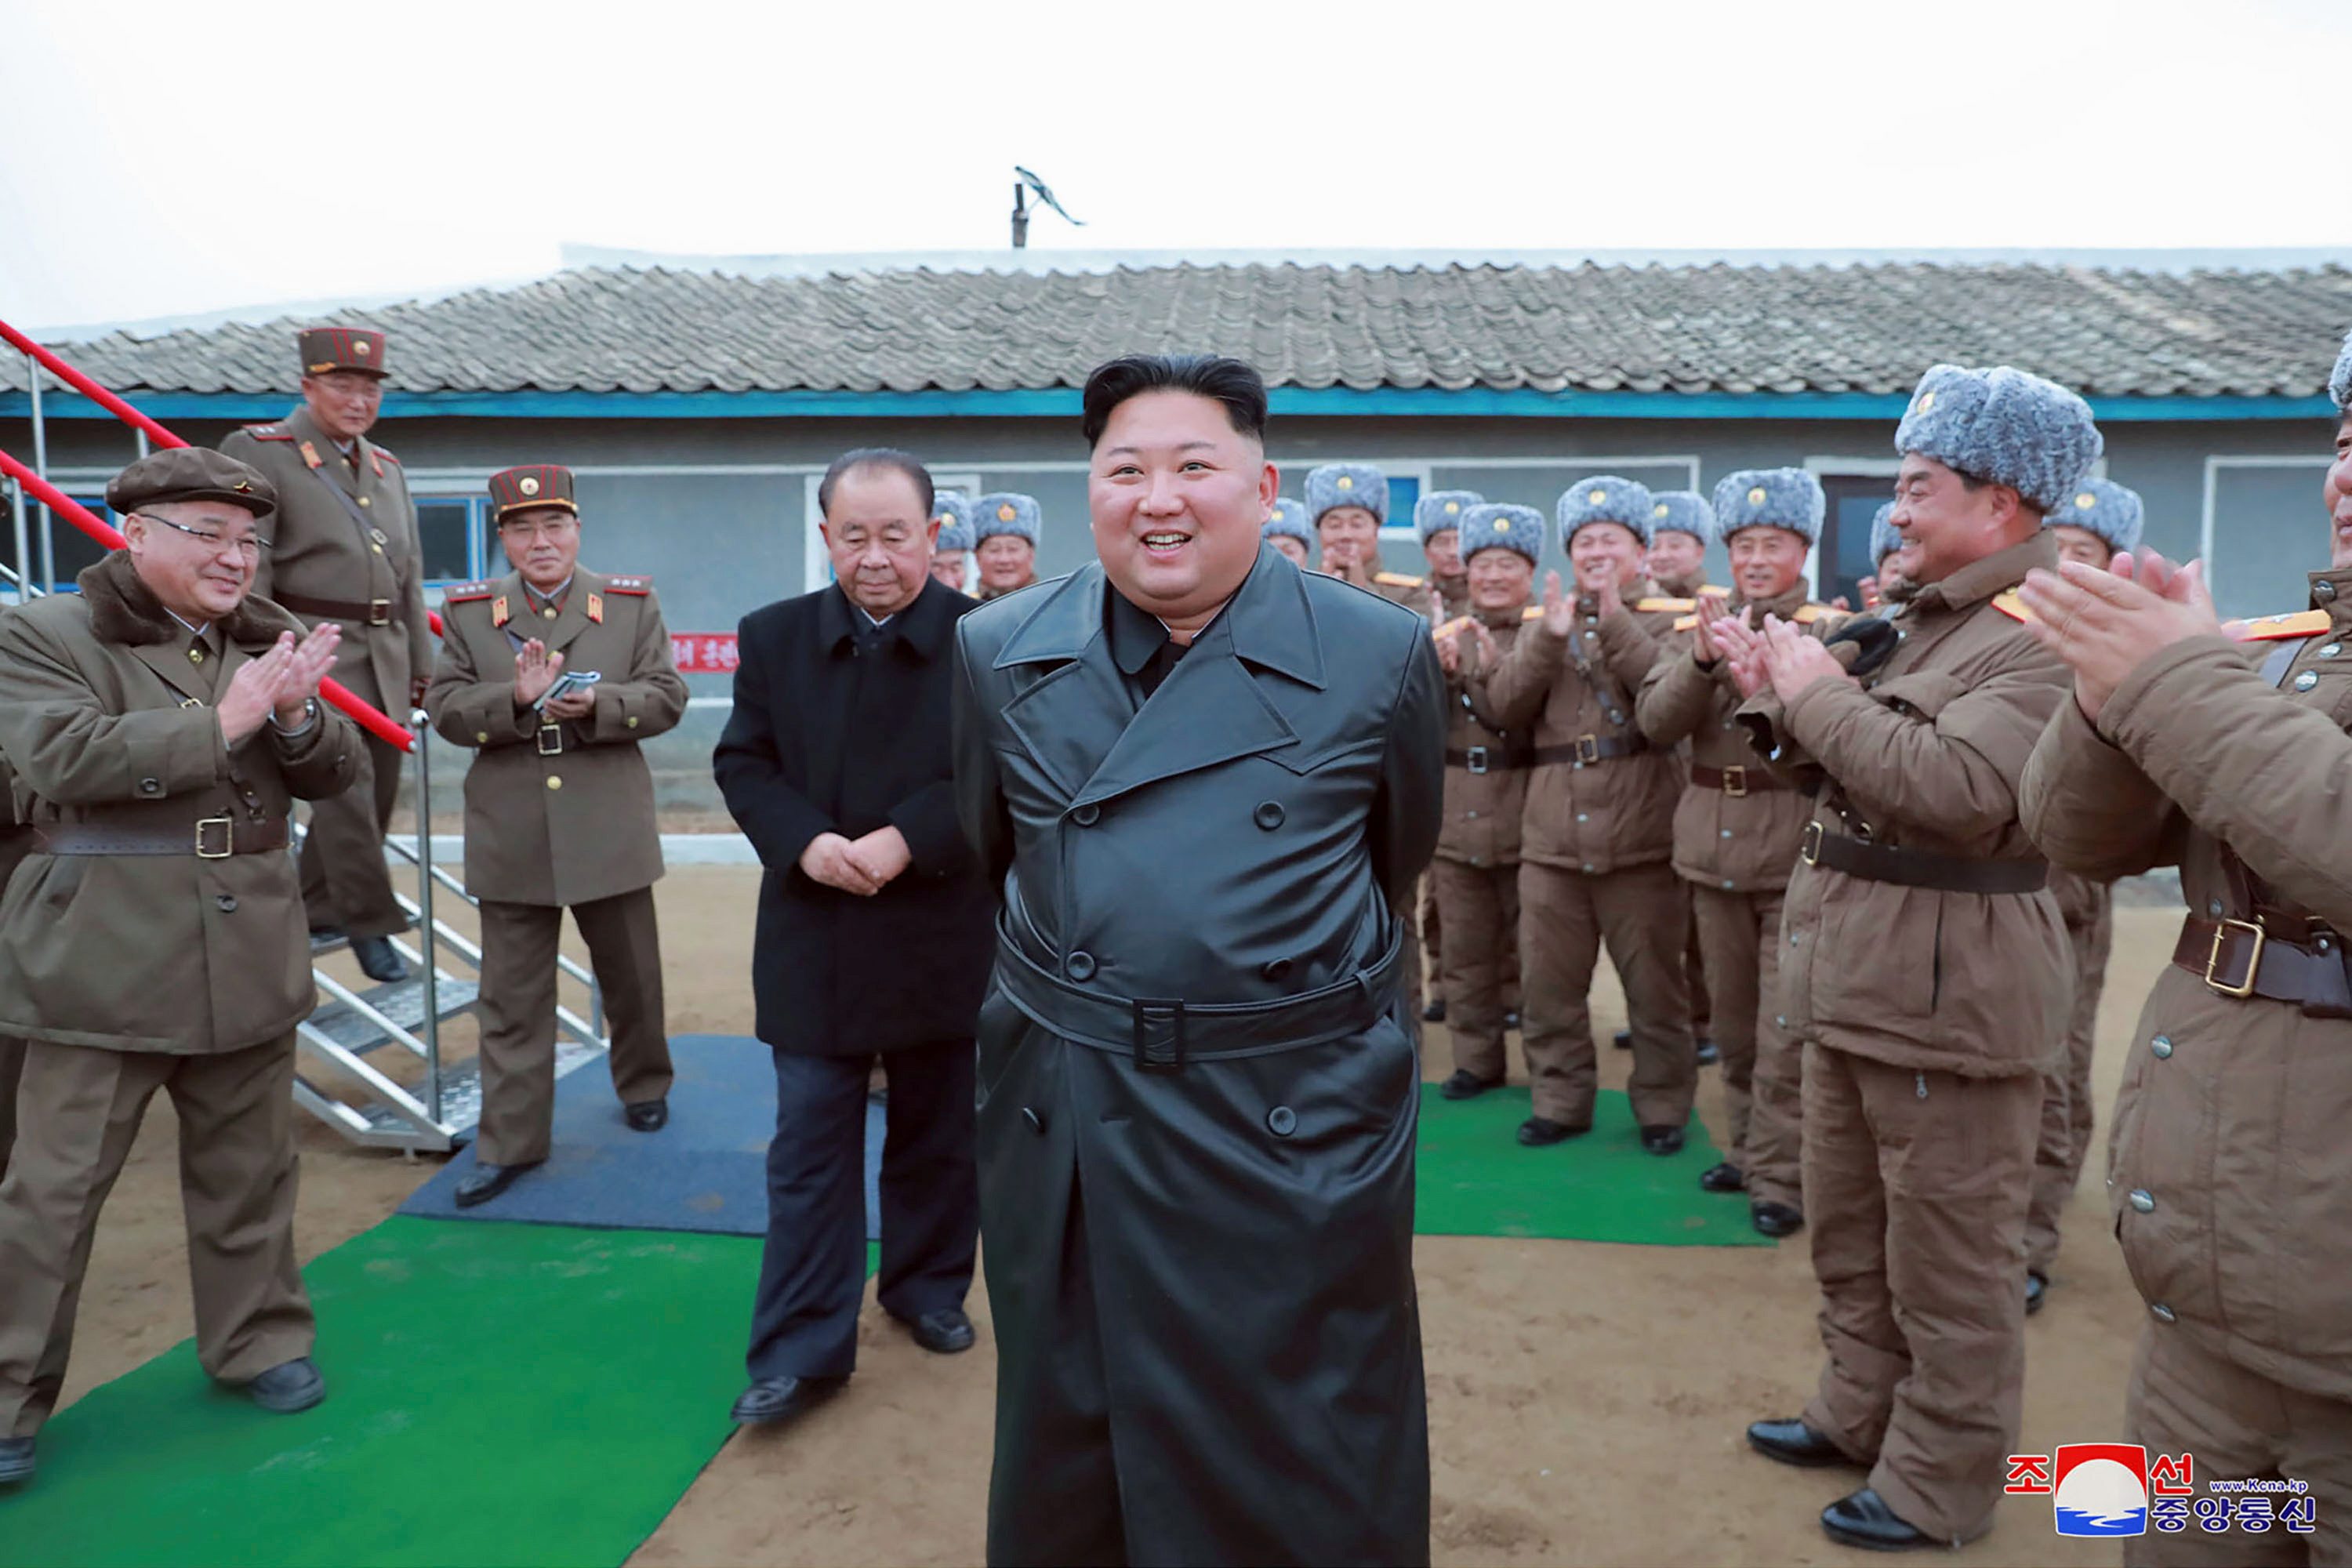 North Korean Defector S Comments Sharpen Debate Over